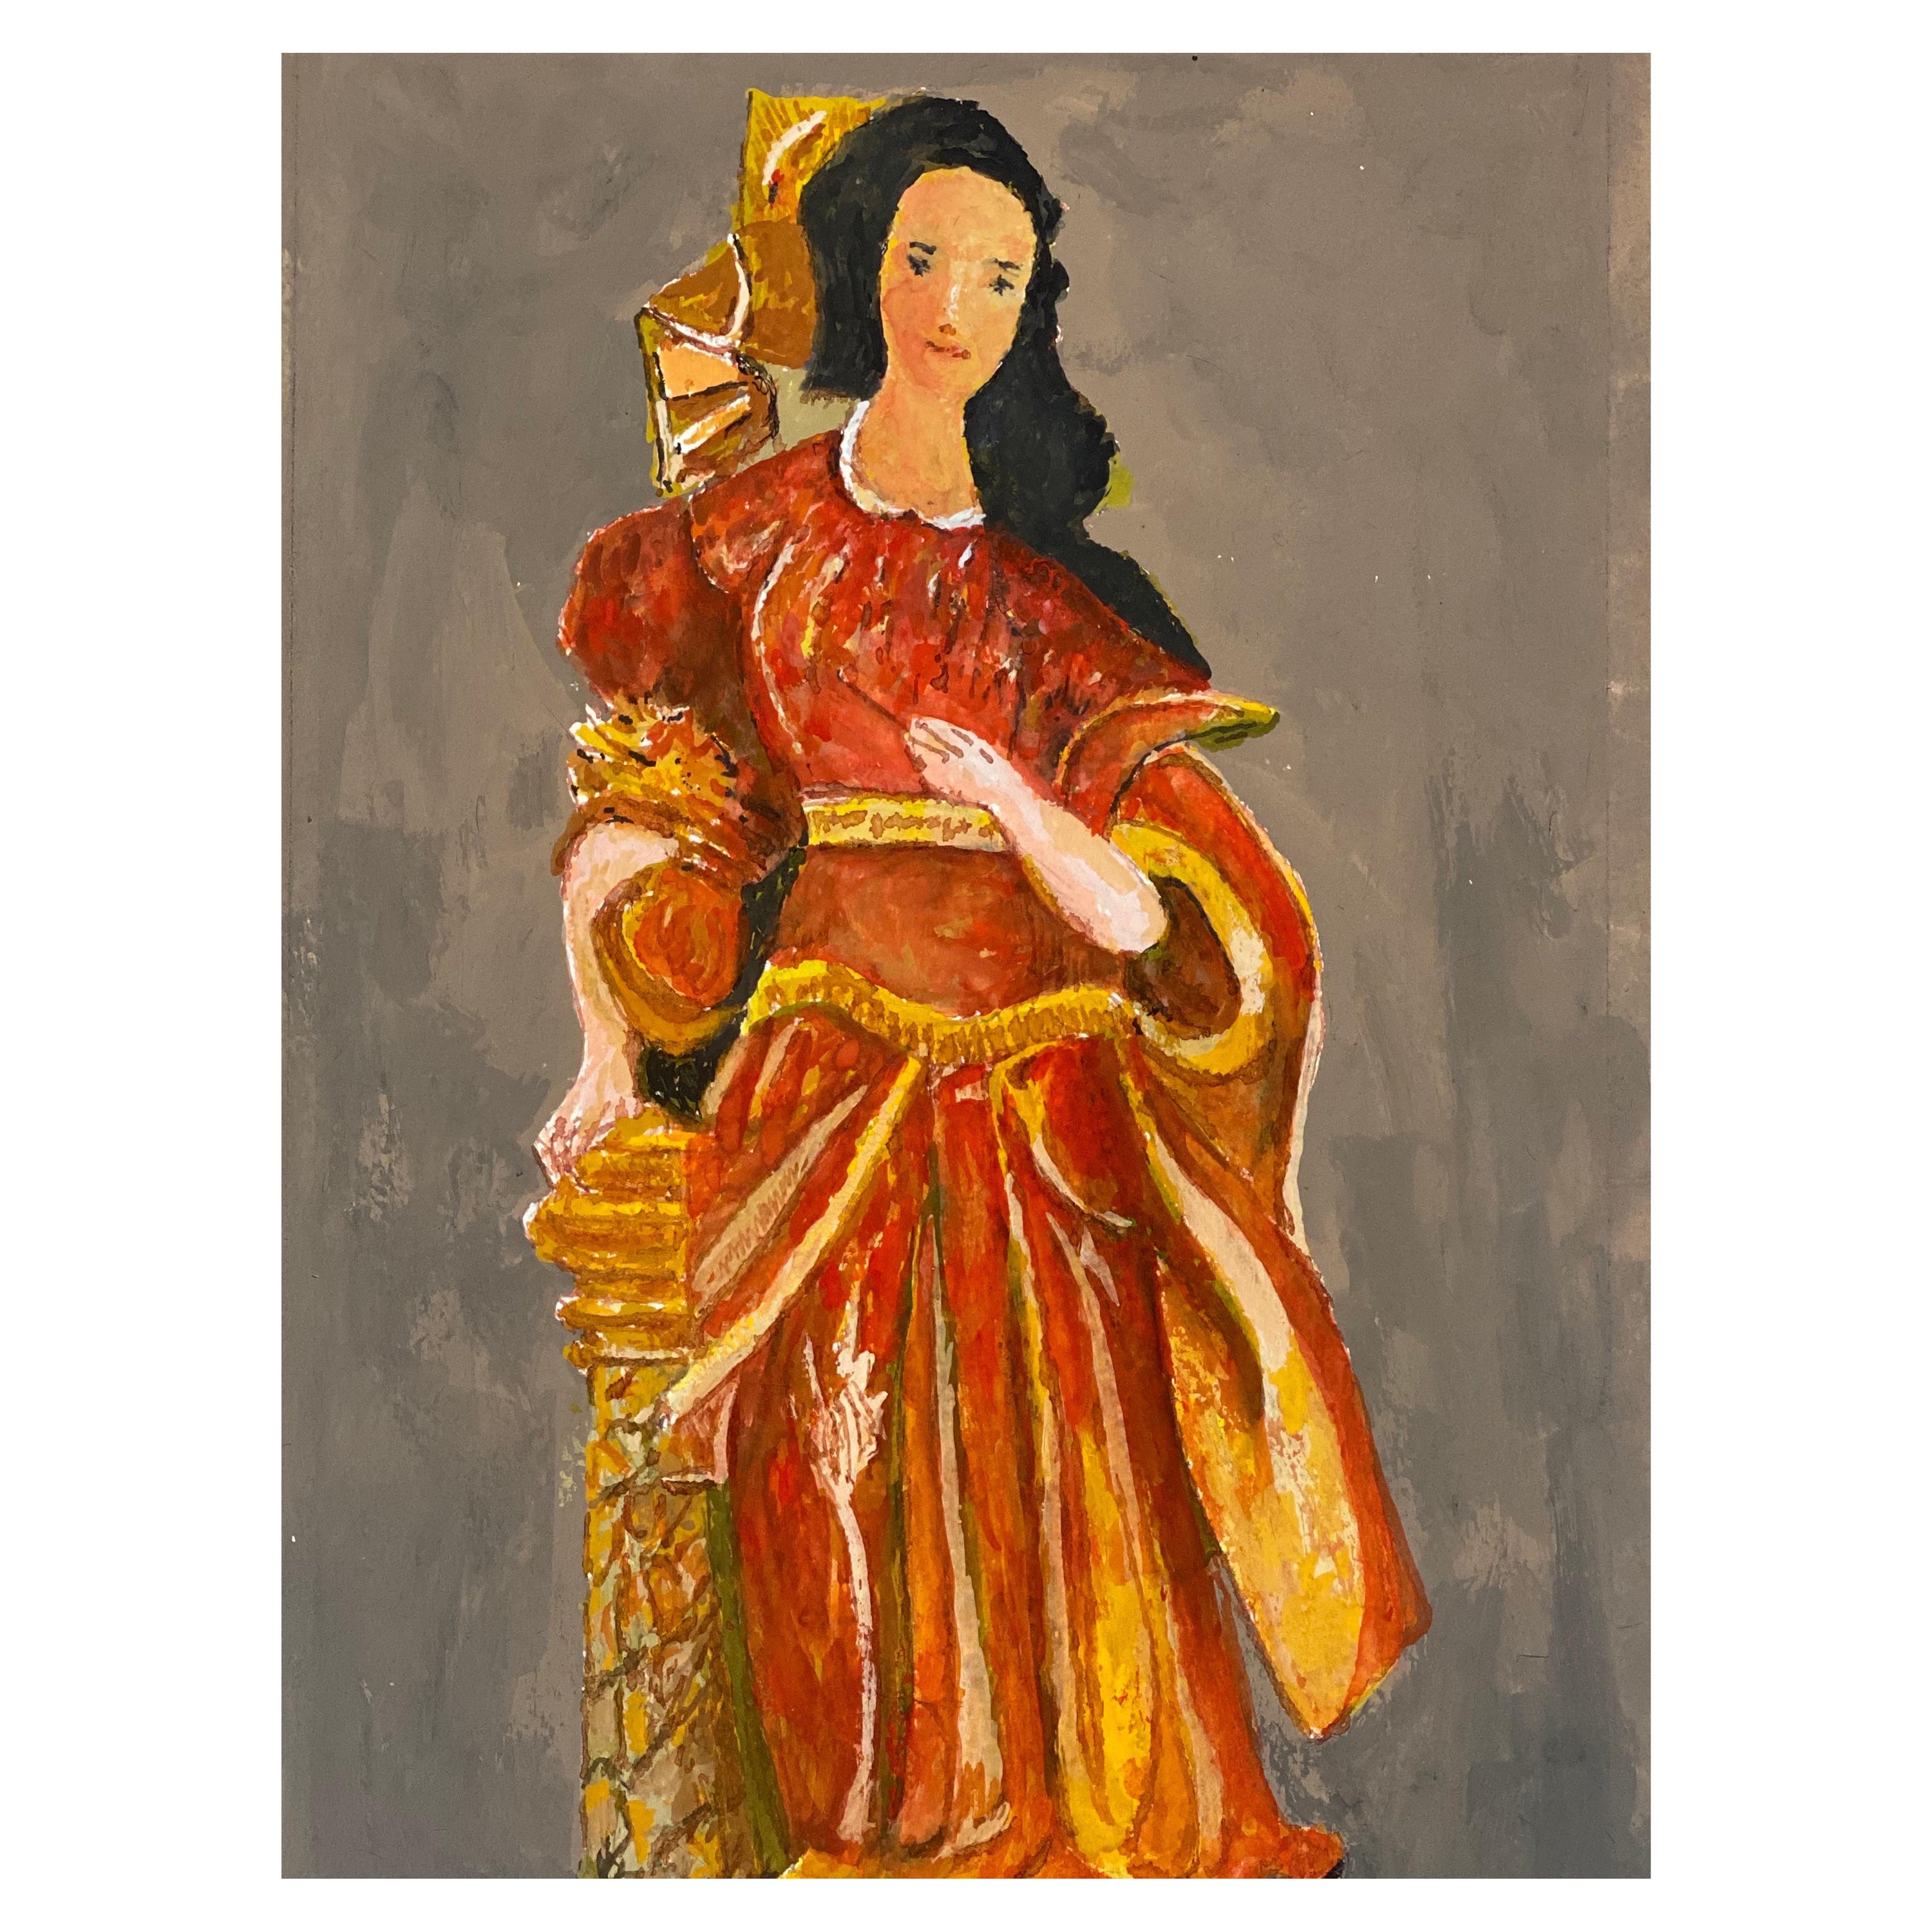 Französisches modernistisches/ kubistisches Gemälde der 1950er Jahre - Dame in lebhaftem Rot und Orange Kleid